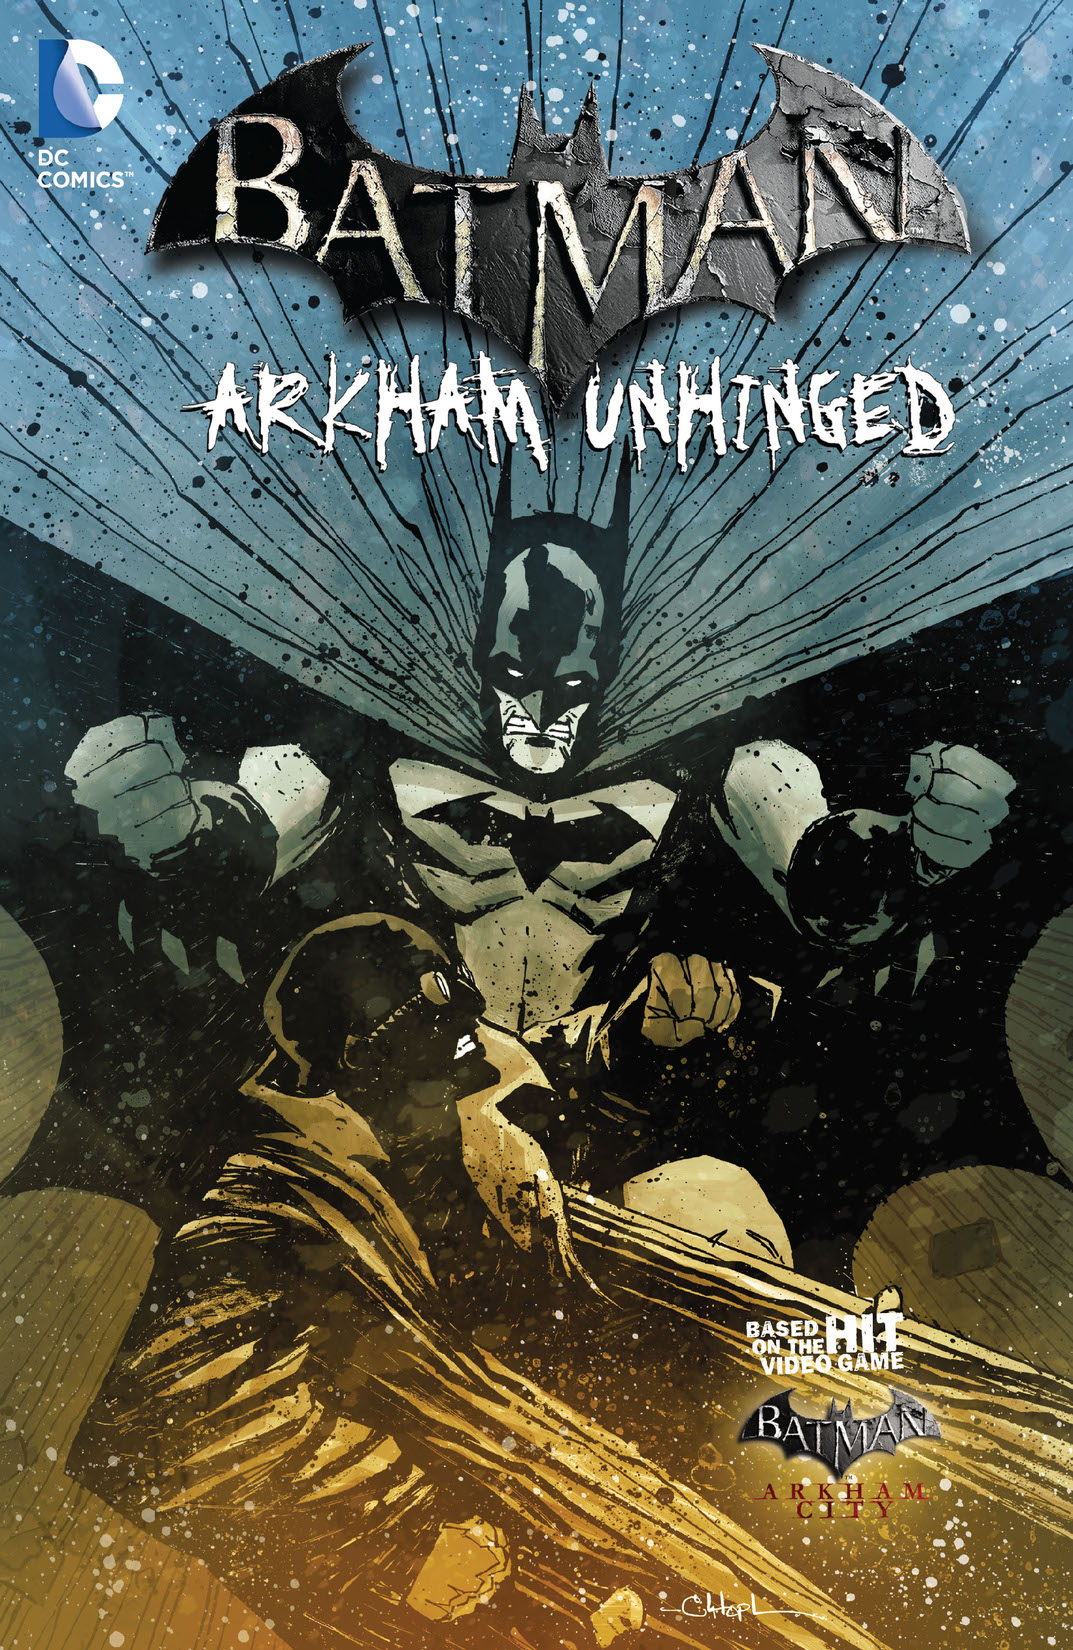 Batman: Arkham Unhinged Vol. 4 preview images